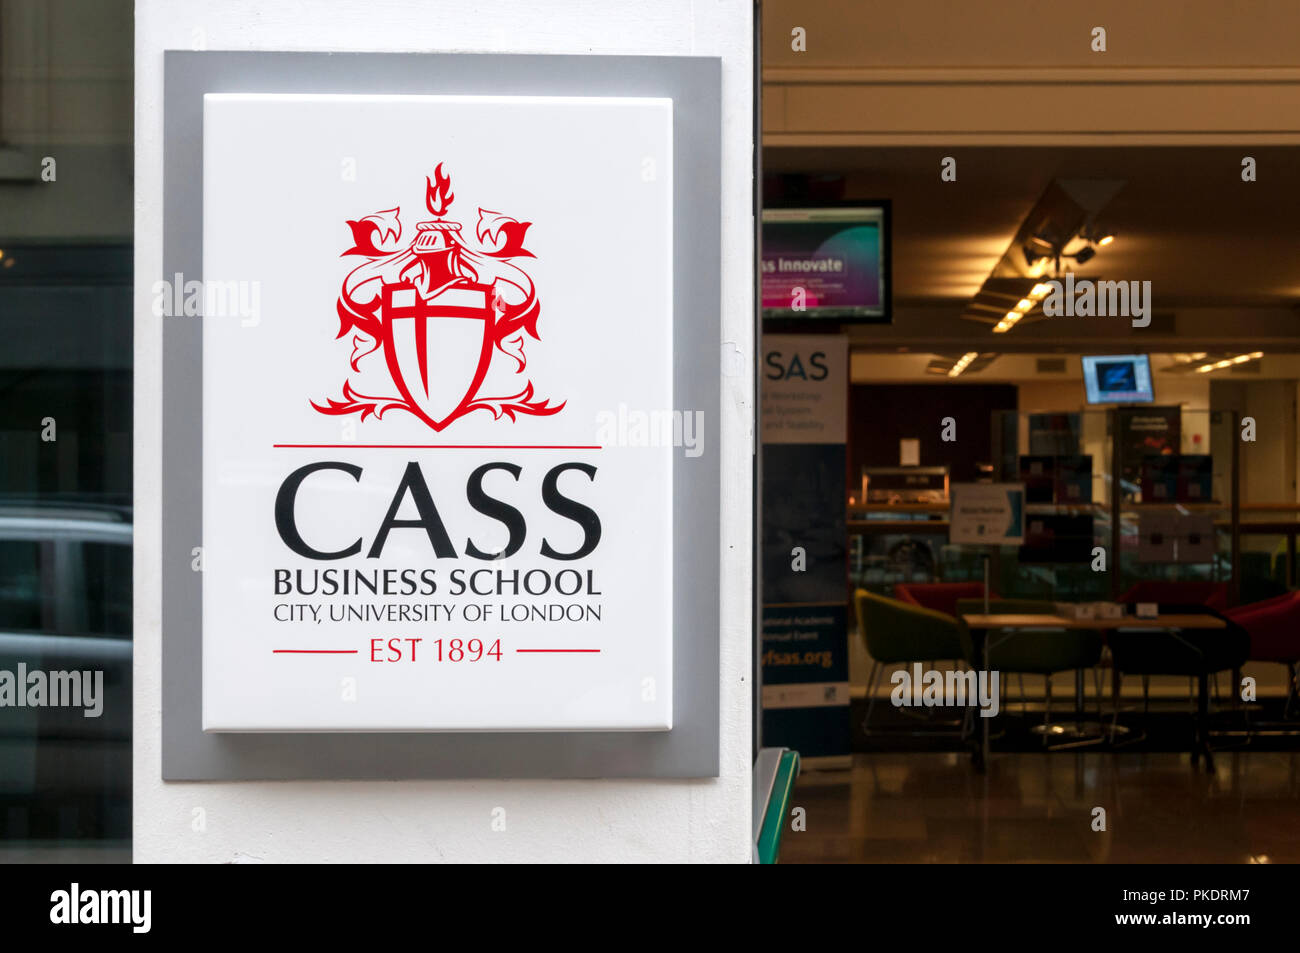 Cass Business School está la ciudad, la Universidad de la escuela de negocios de Londres, creado en 1966. Ubicado en Verá Bunhill Row justo al norte de la ciudad de Londres. Foto de stock